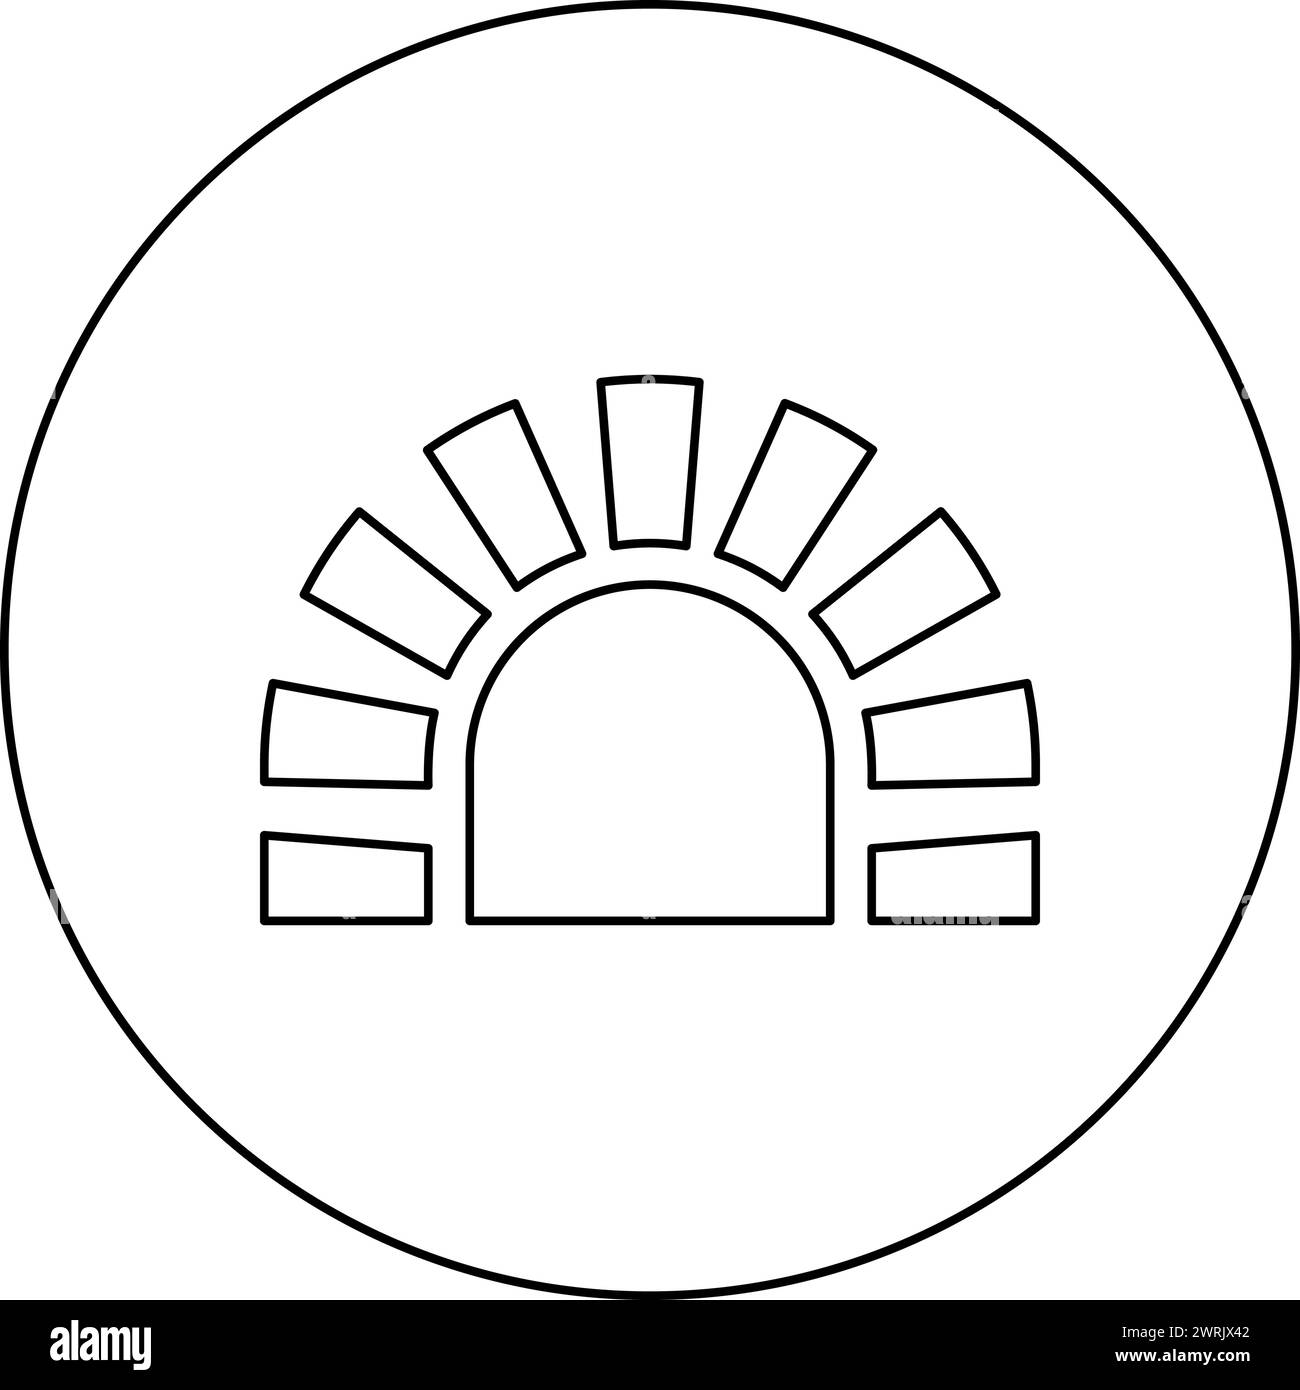 Piano cottura in pietra, caminetto in mattoni, caminetto per cucinare e forno da forno, icona tradizionale nell'immagine circolare di colore nero vettoriale Illustrazione Vettoriale